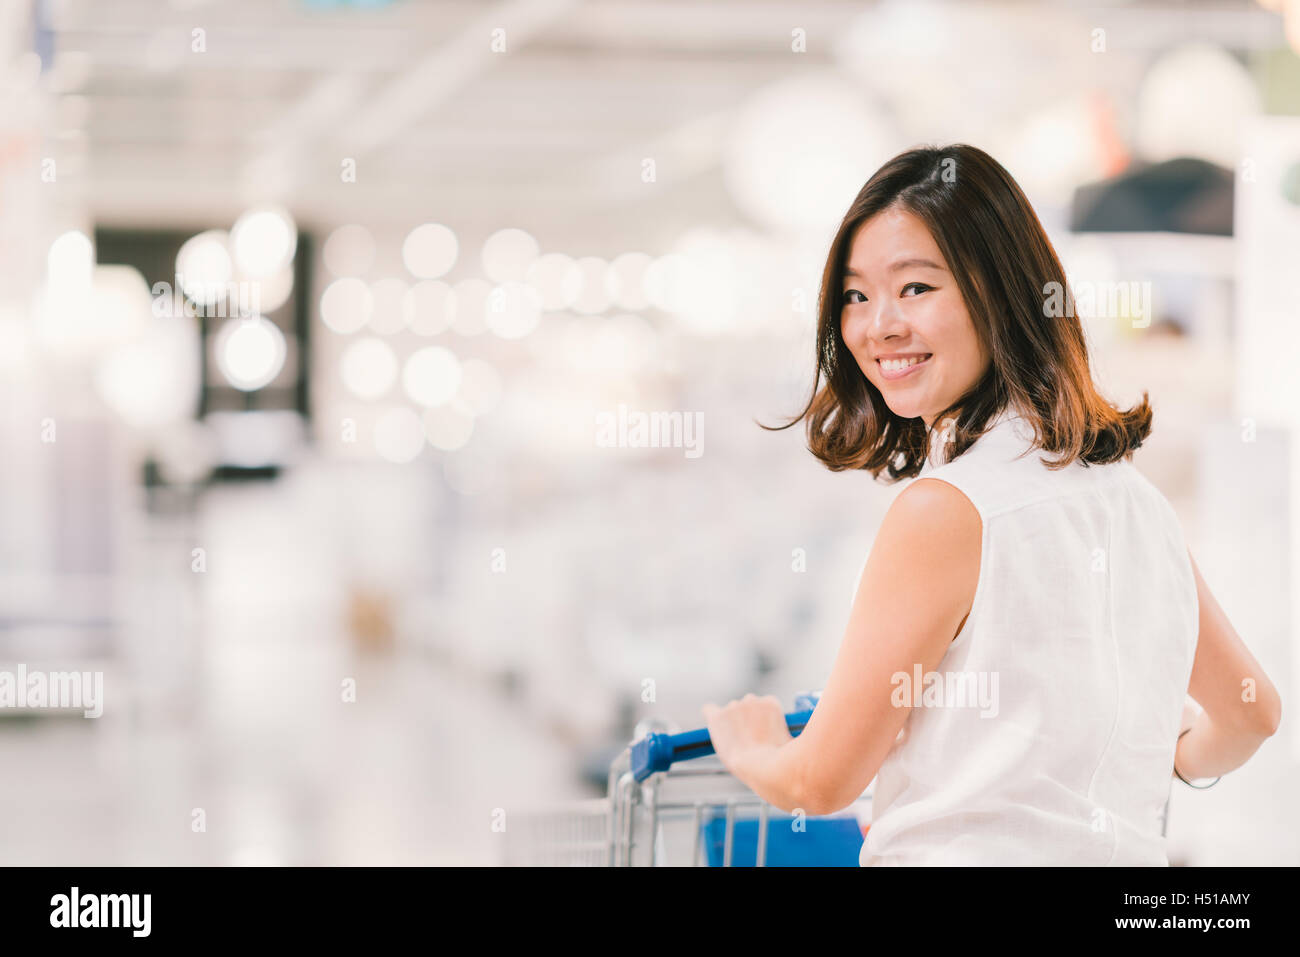 Bella giovane donna asiatica sorridente, con carrello, shopping center o department store in scena, sfocatura dello sfondo bokeh di fondo Foto Stock